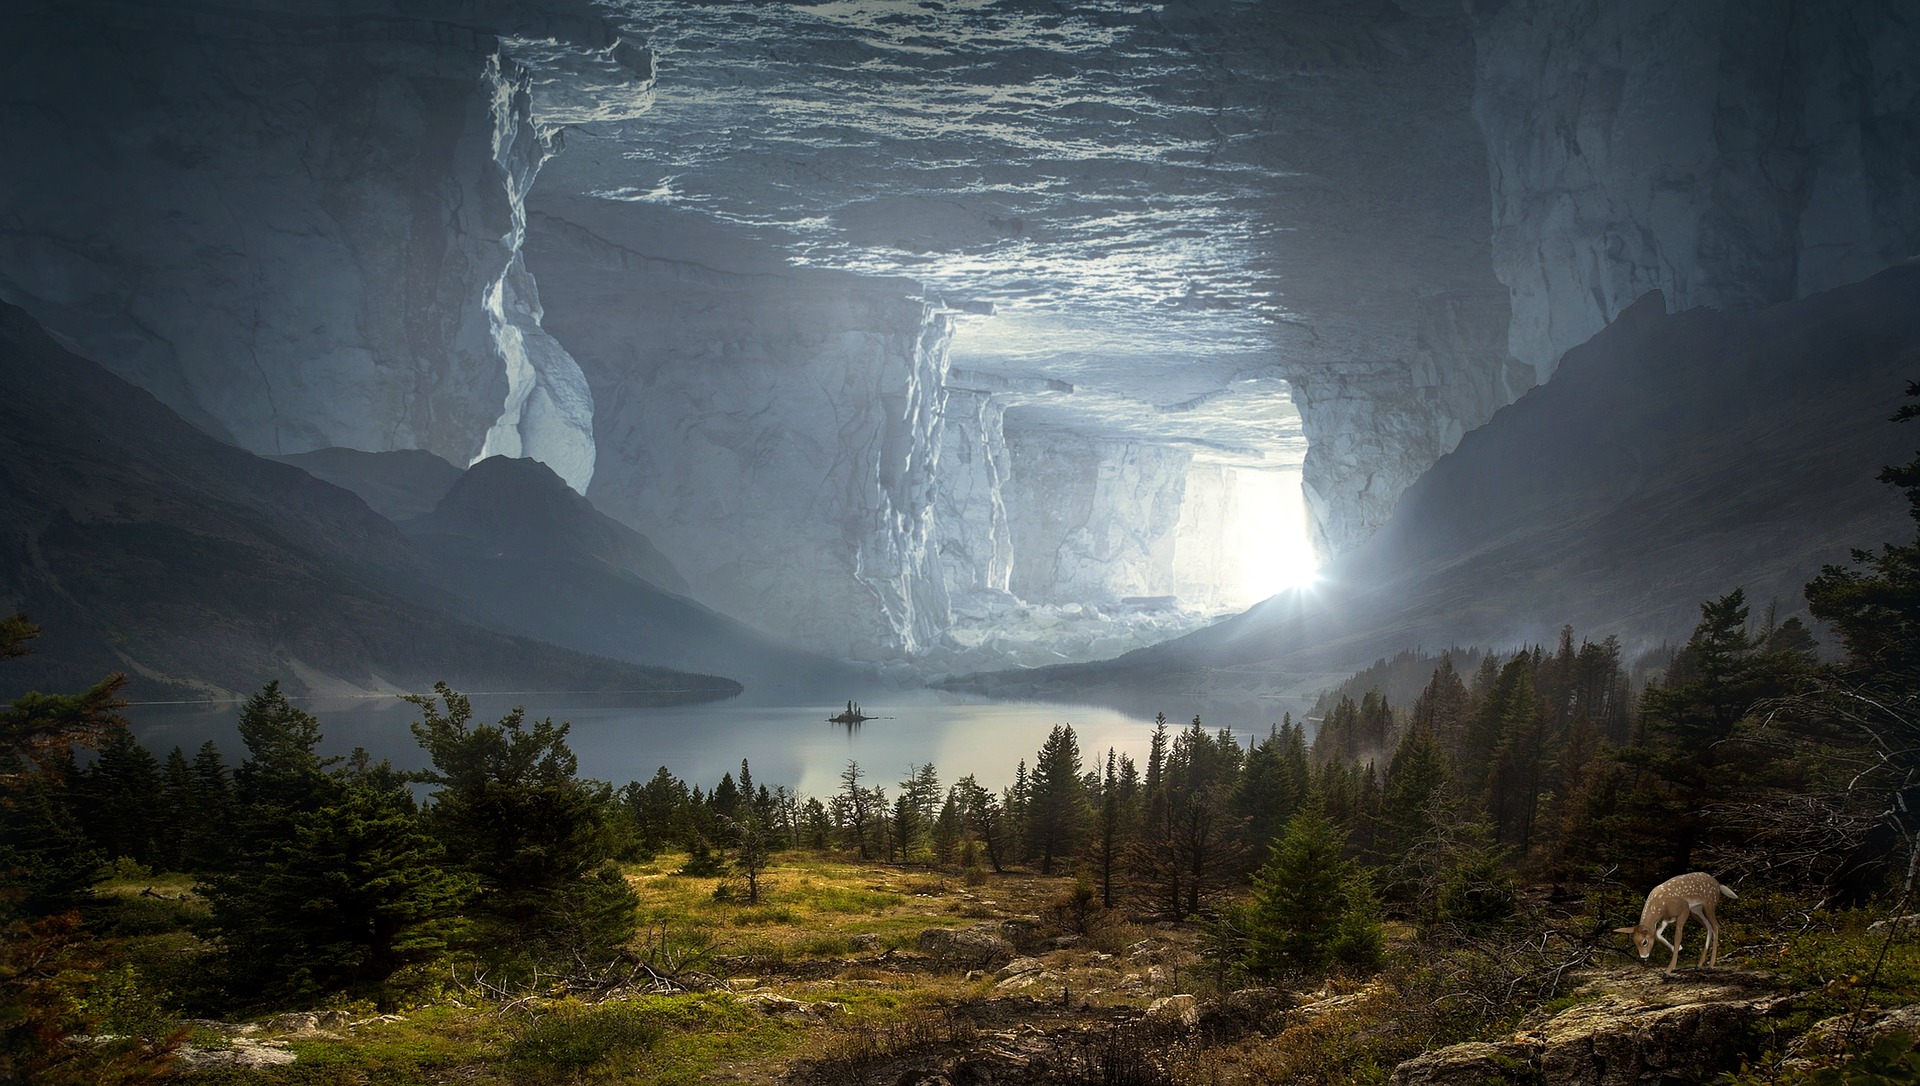 https://pixabay.com/en/fantasy-cave-mystical-rock-stone-2750995/